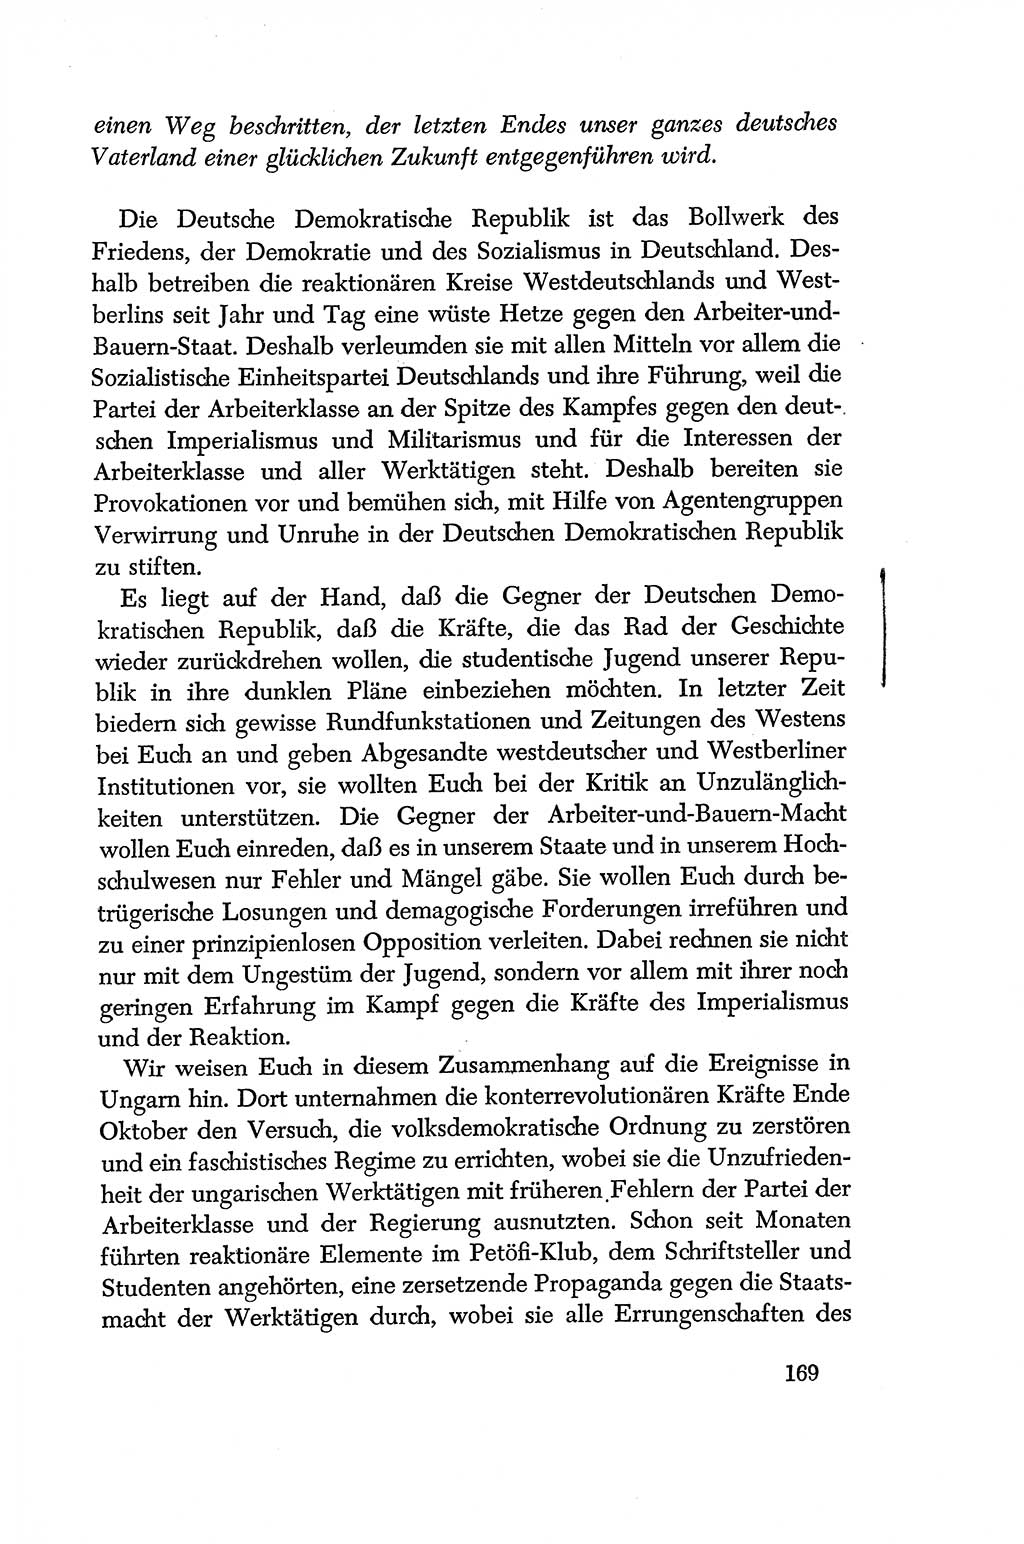 Dokumente der Sozialistischen Einheitspartei Deutschlands (SED) [Deutsche Demokratische Republik (DDR)] 1956-1957, Seite 169 (Dok. SED DDR 1956-1957, S. 169)